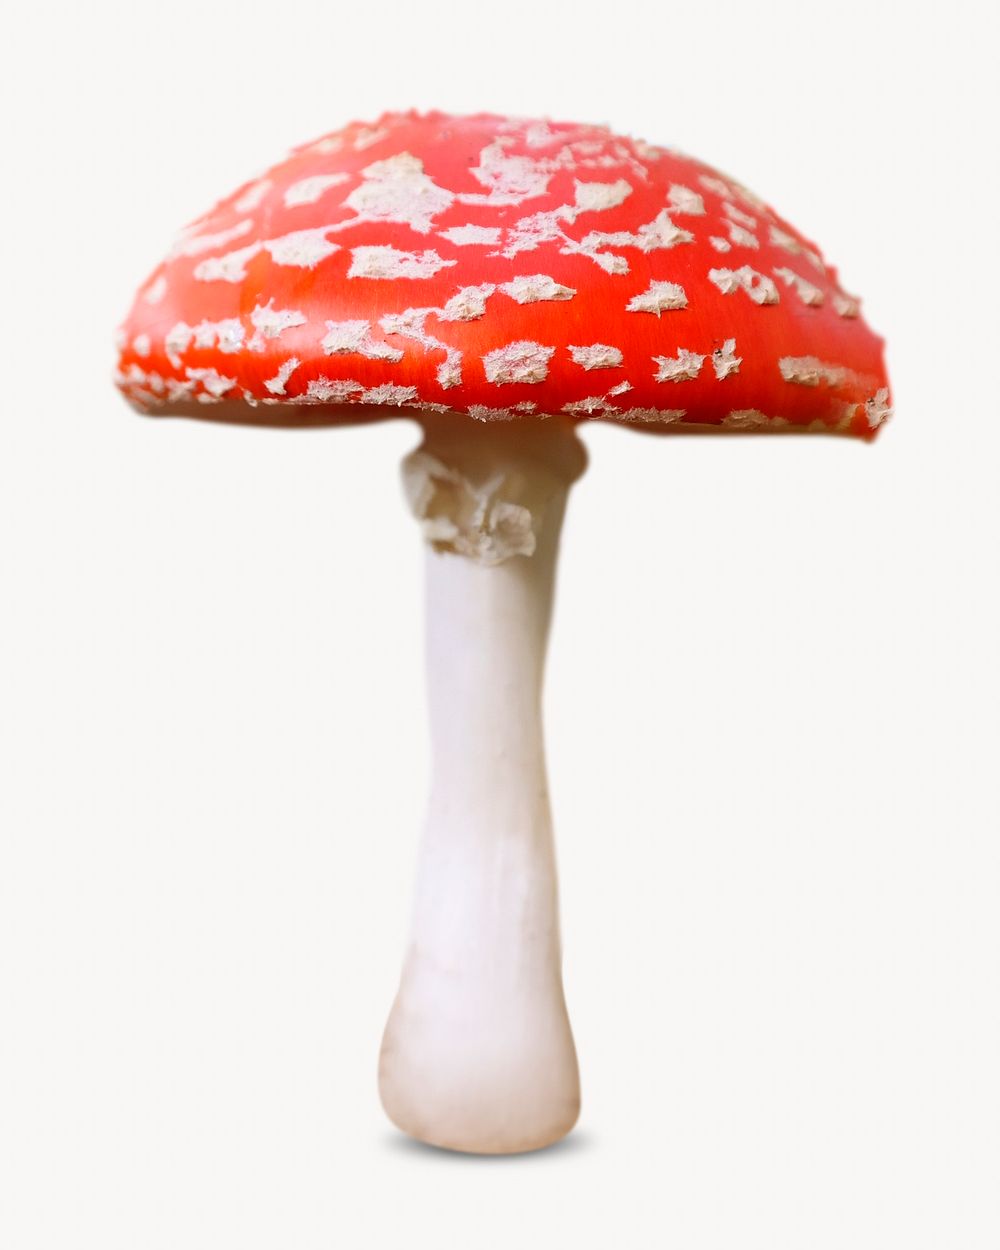 Poisonous mushroom image on white background